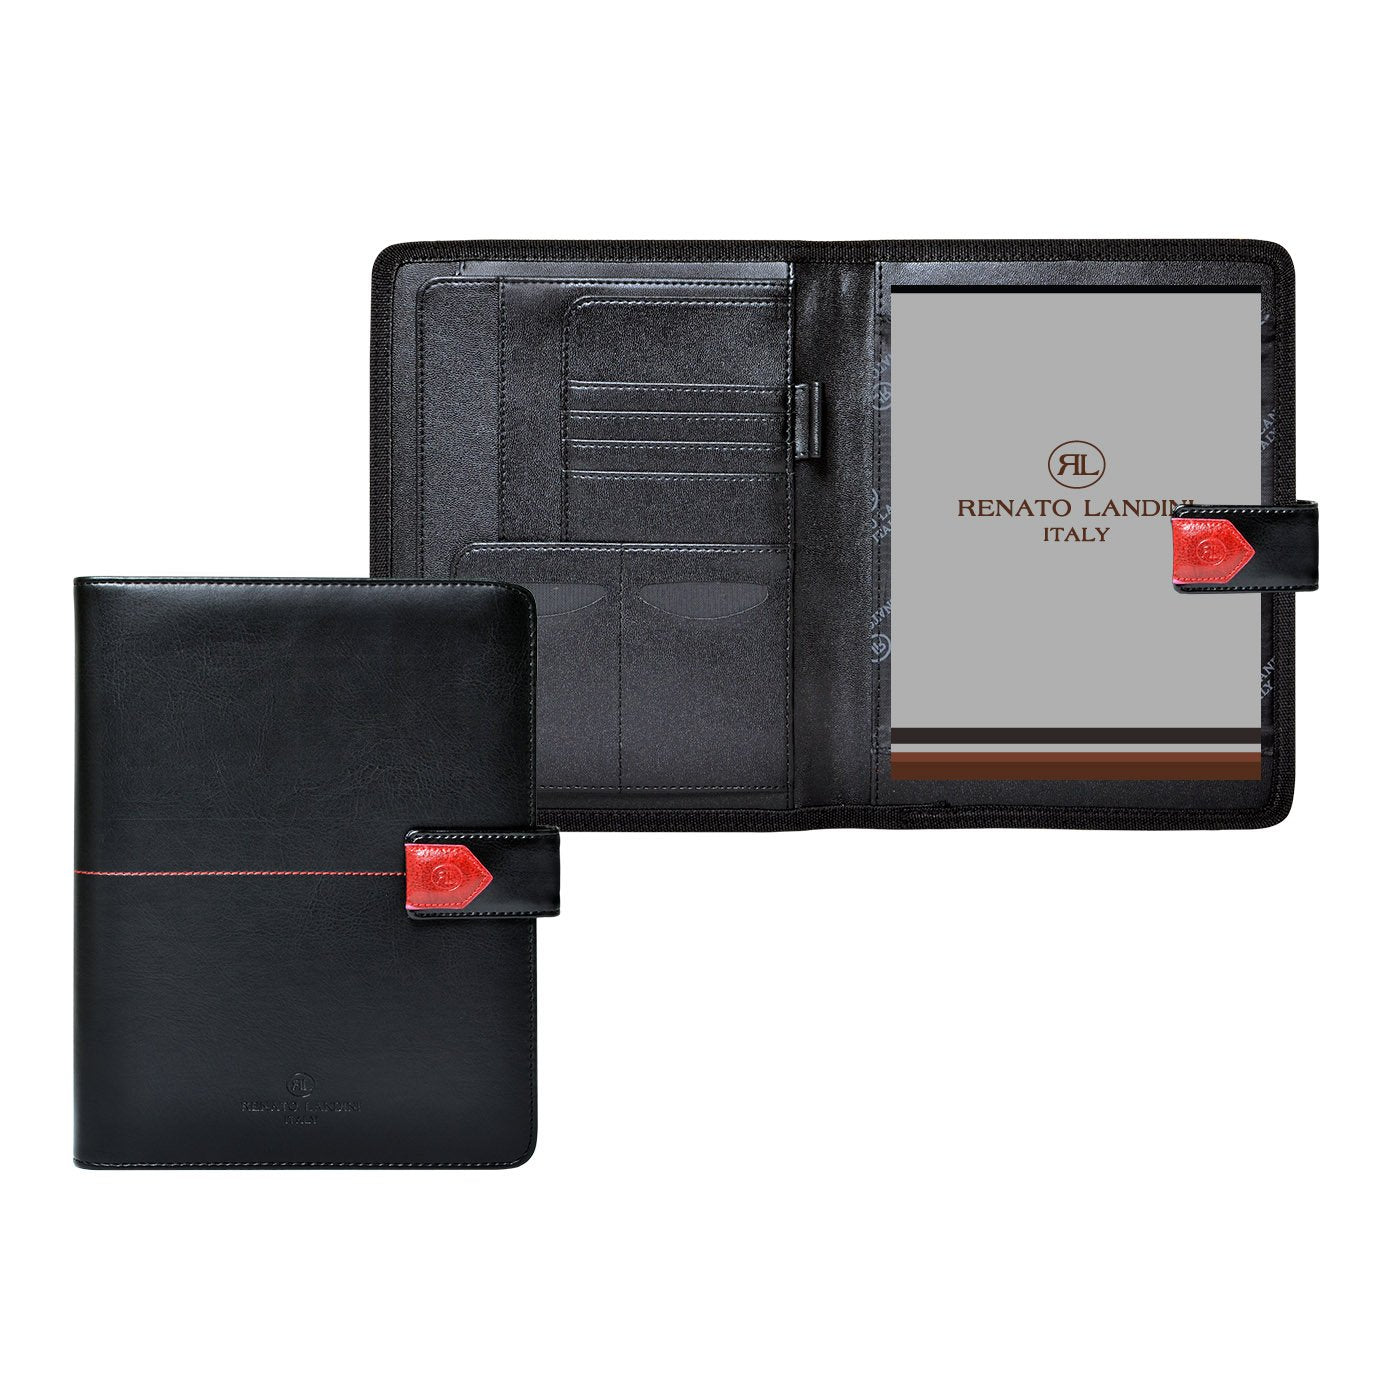 RENATO LANDINI A5 Black Leather Folder/ Contact